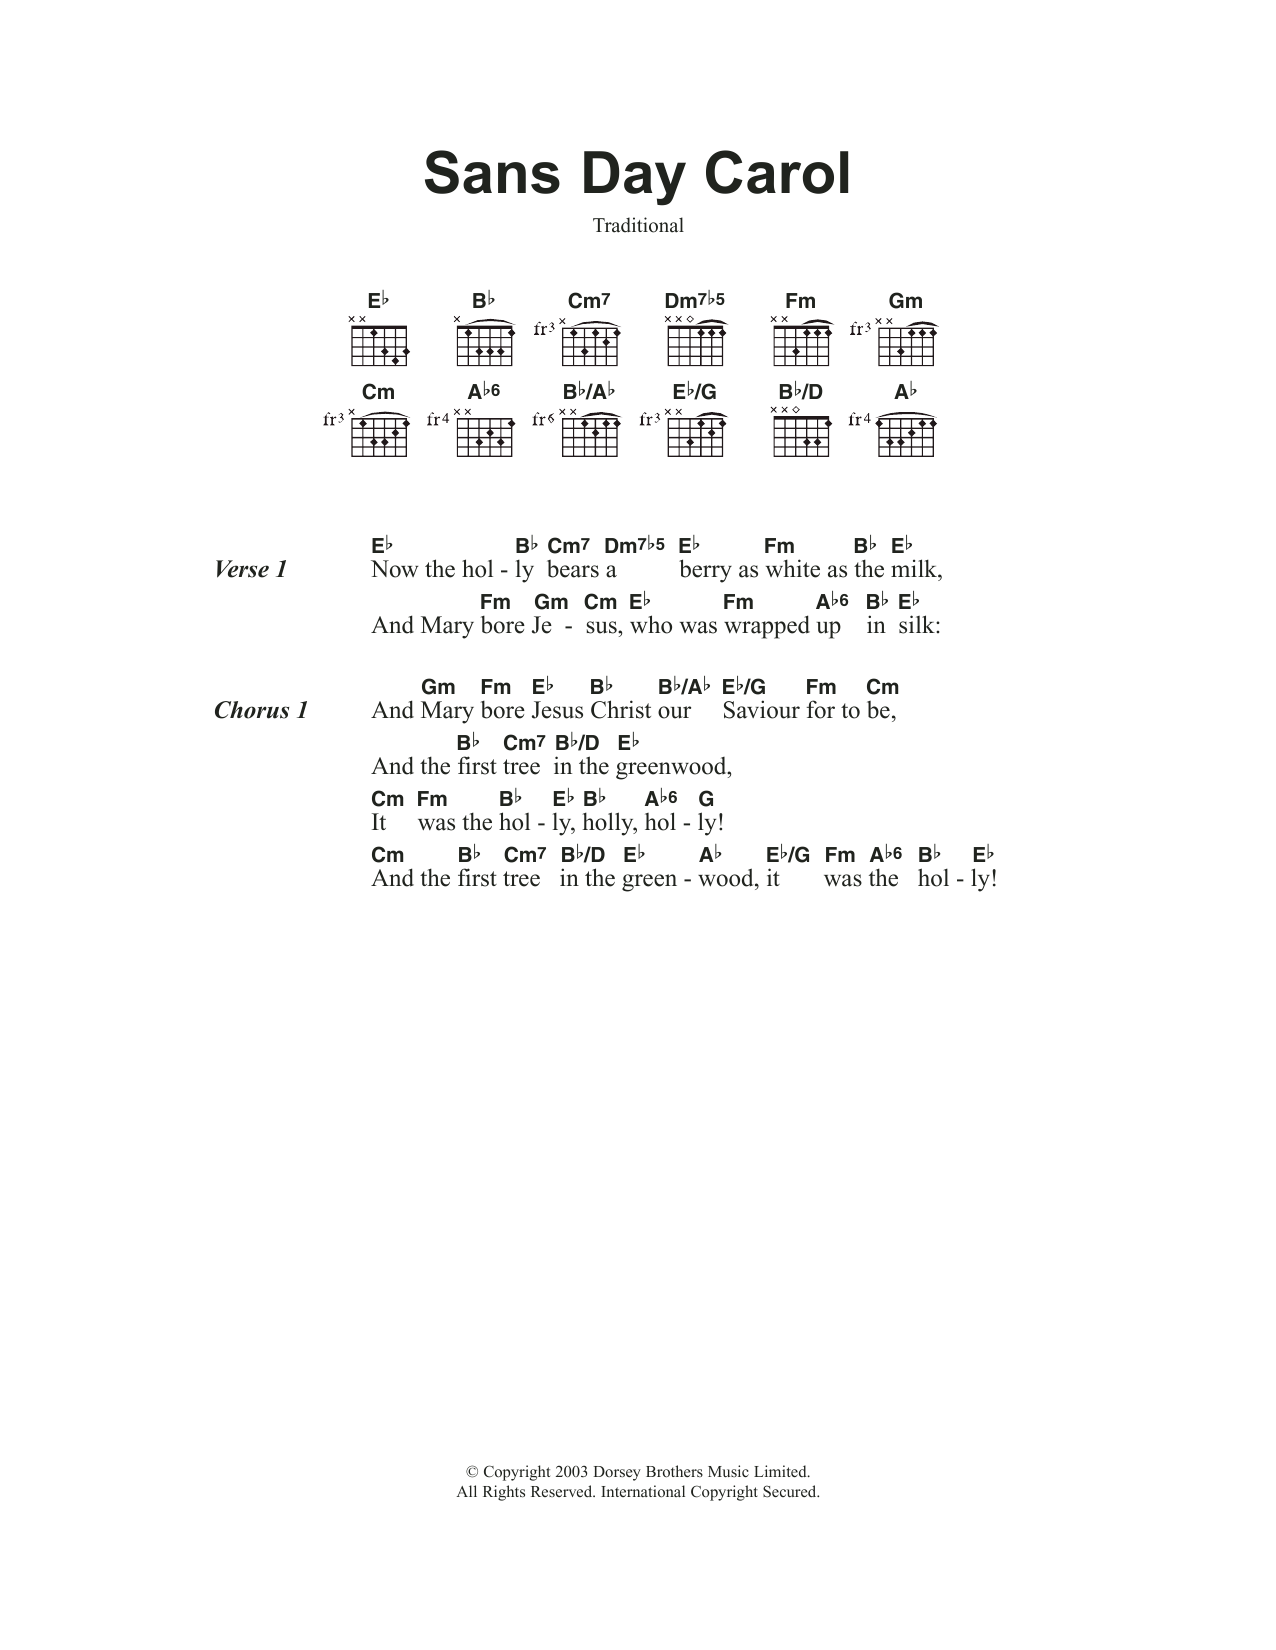 Traditional Carol Sans Day Carol Sheet Music Notes & Chords for Guitar Chords/Lyrics - Download or Print PDF